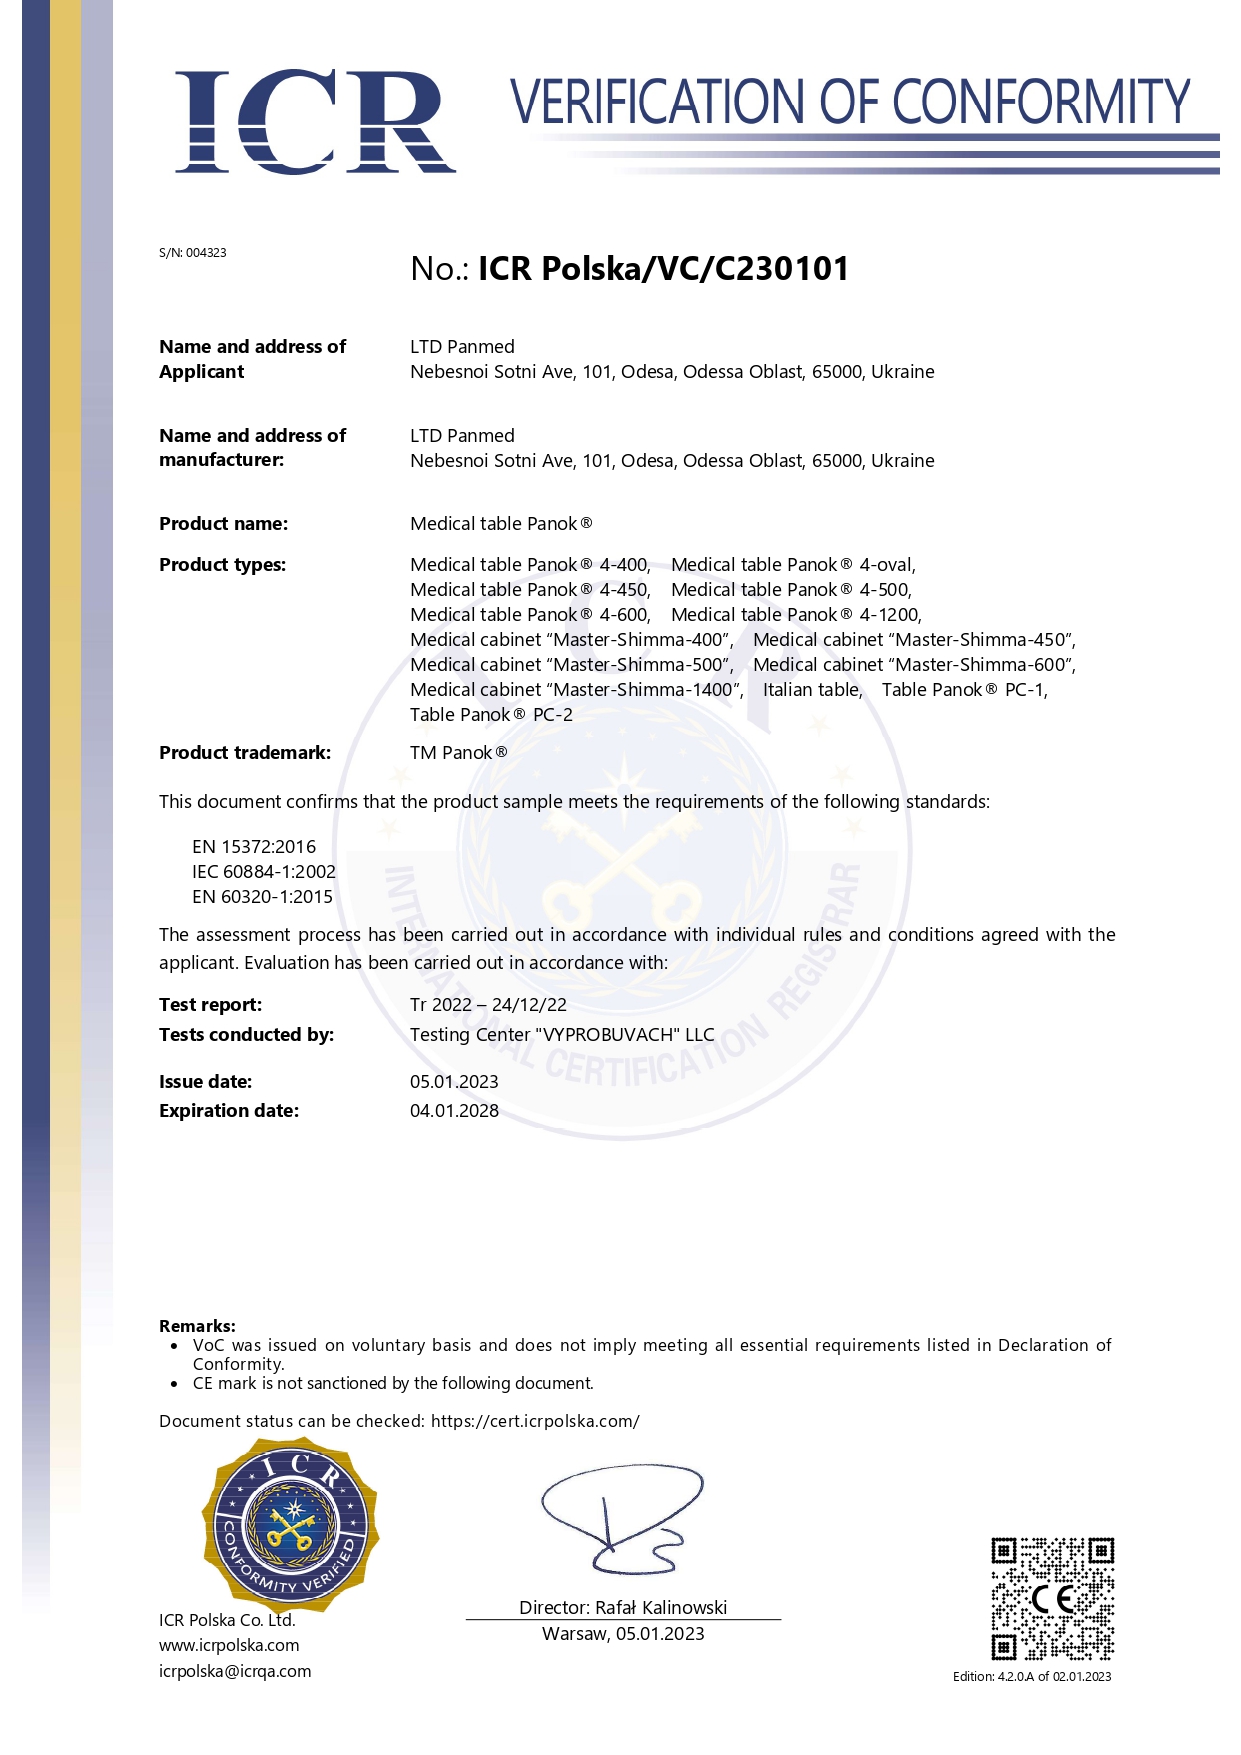 Сертифікат і декларація верифікації відповідності СЕ